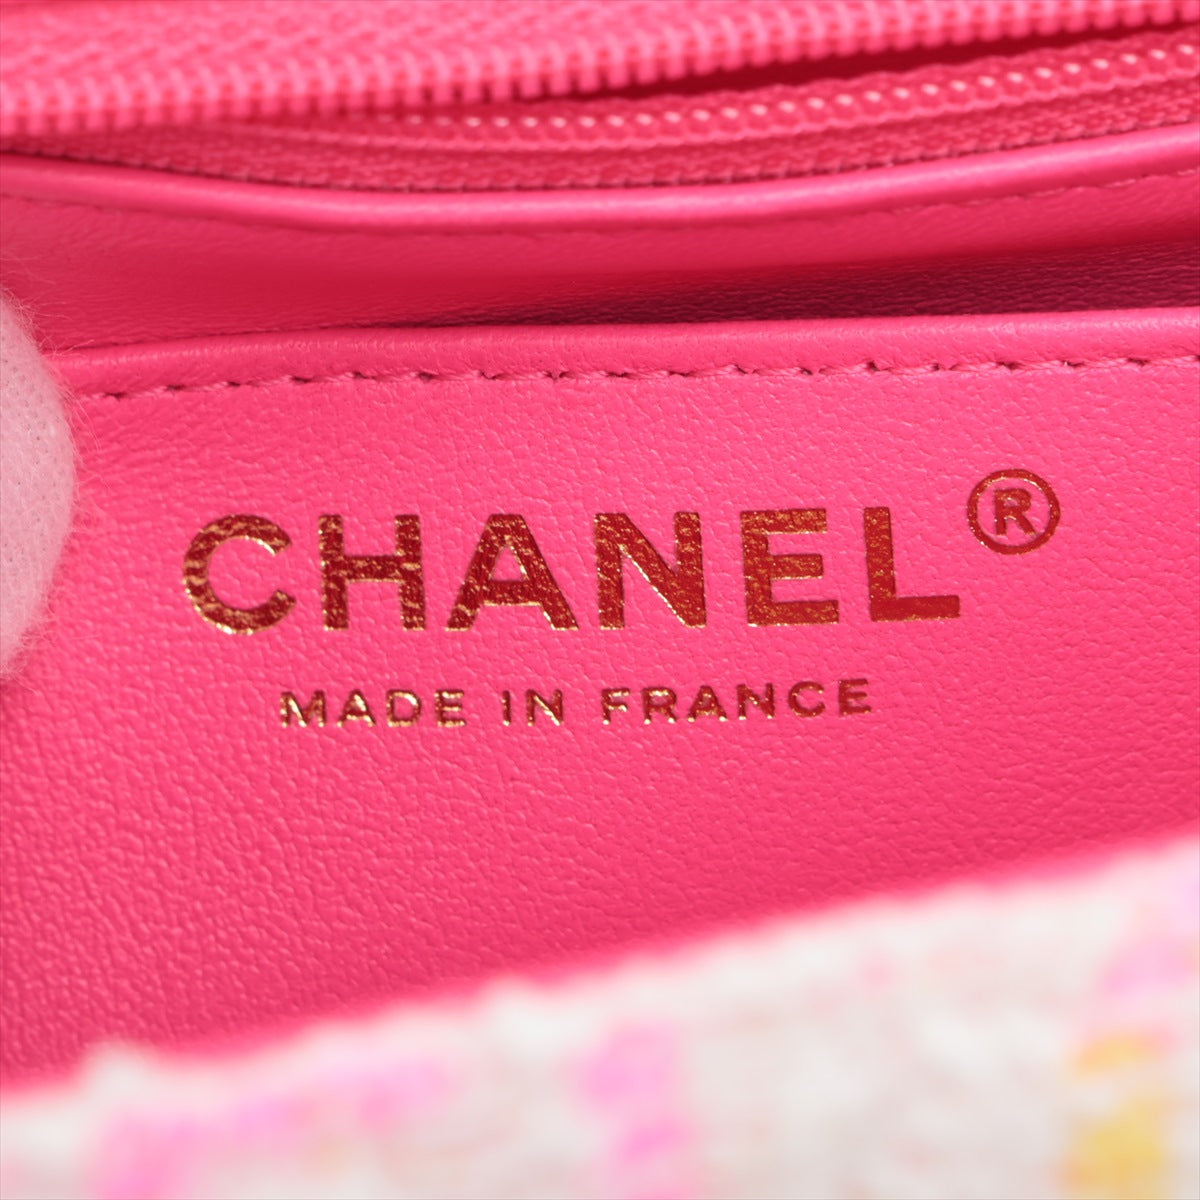 Chanel Mini Mattrasse 20 Pile Single Flap Single Chain Bag White X Pink G  A69900